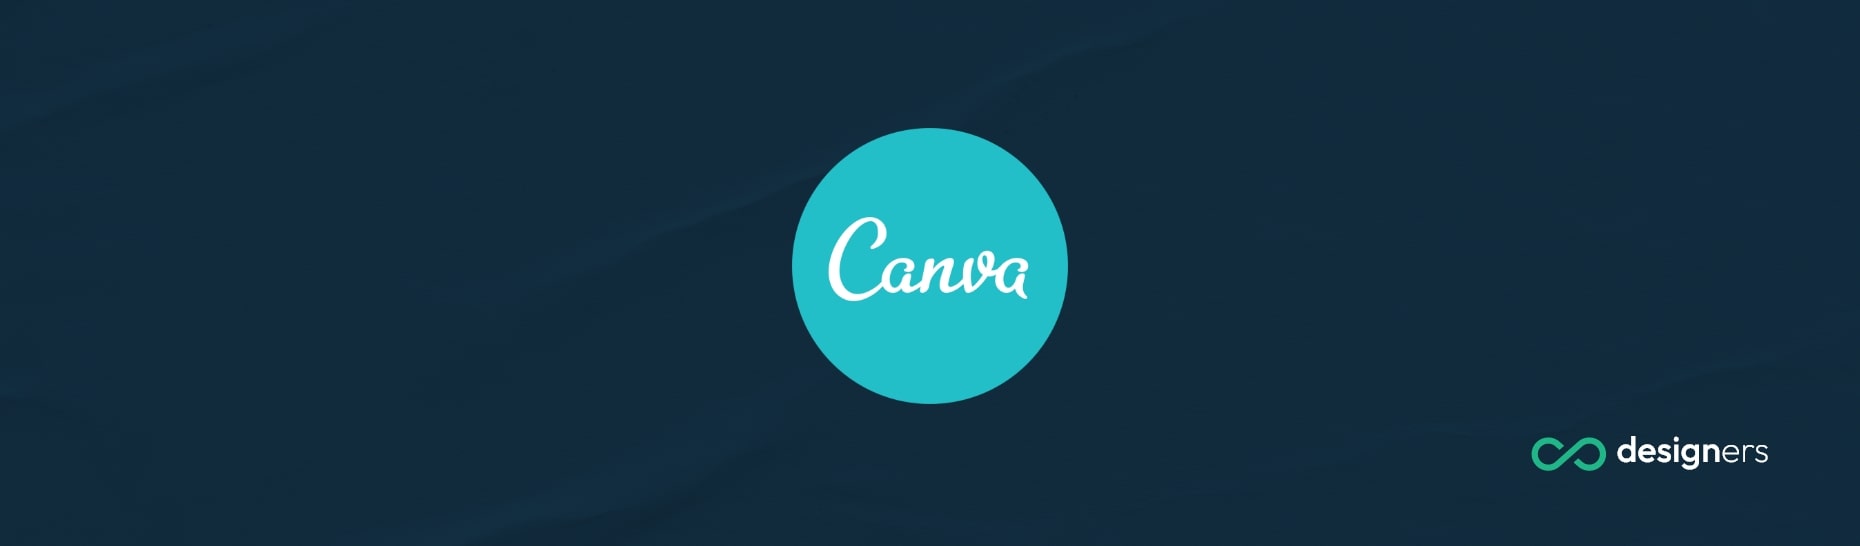 Are My Canva Designs Public?